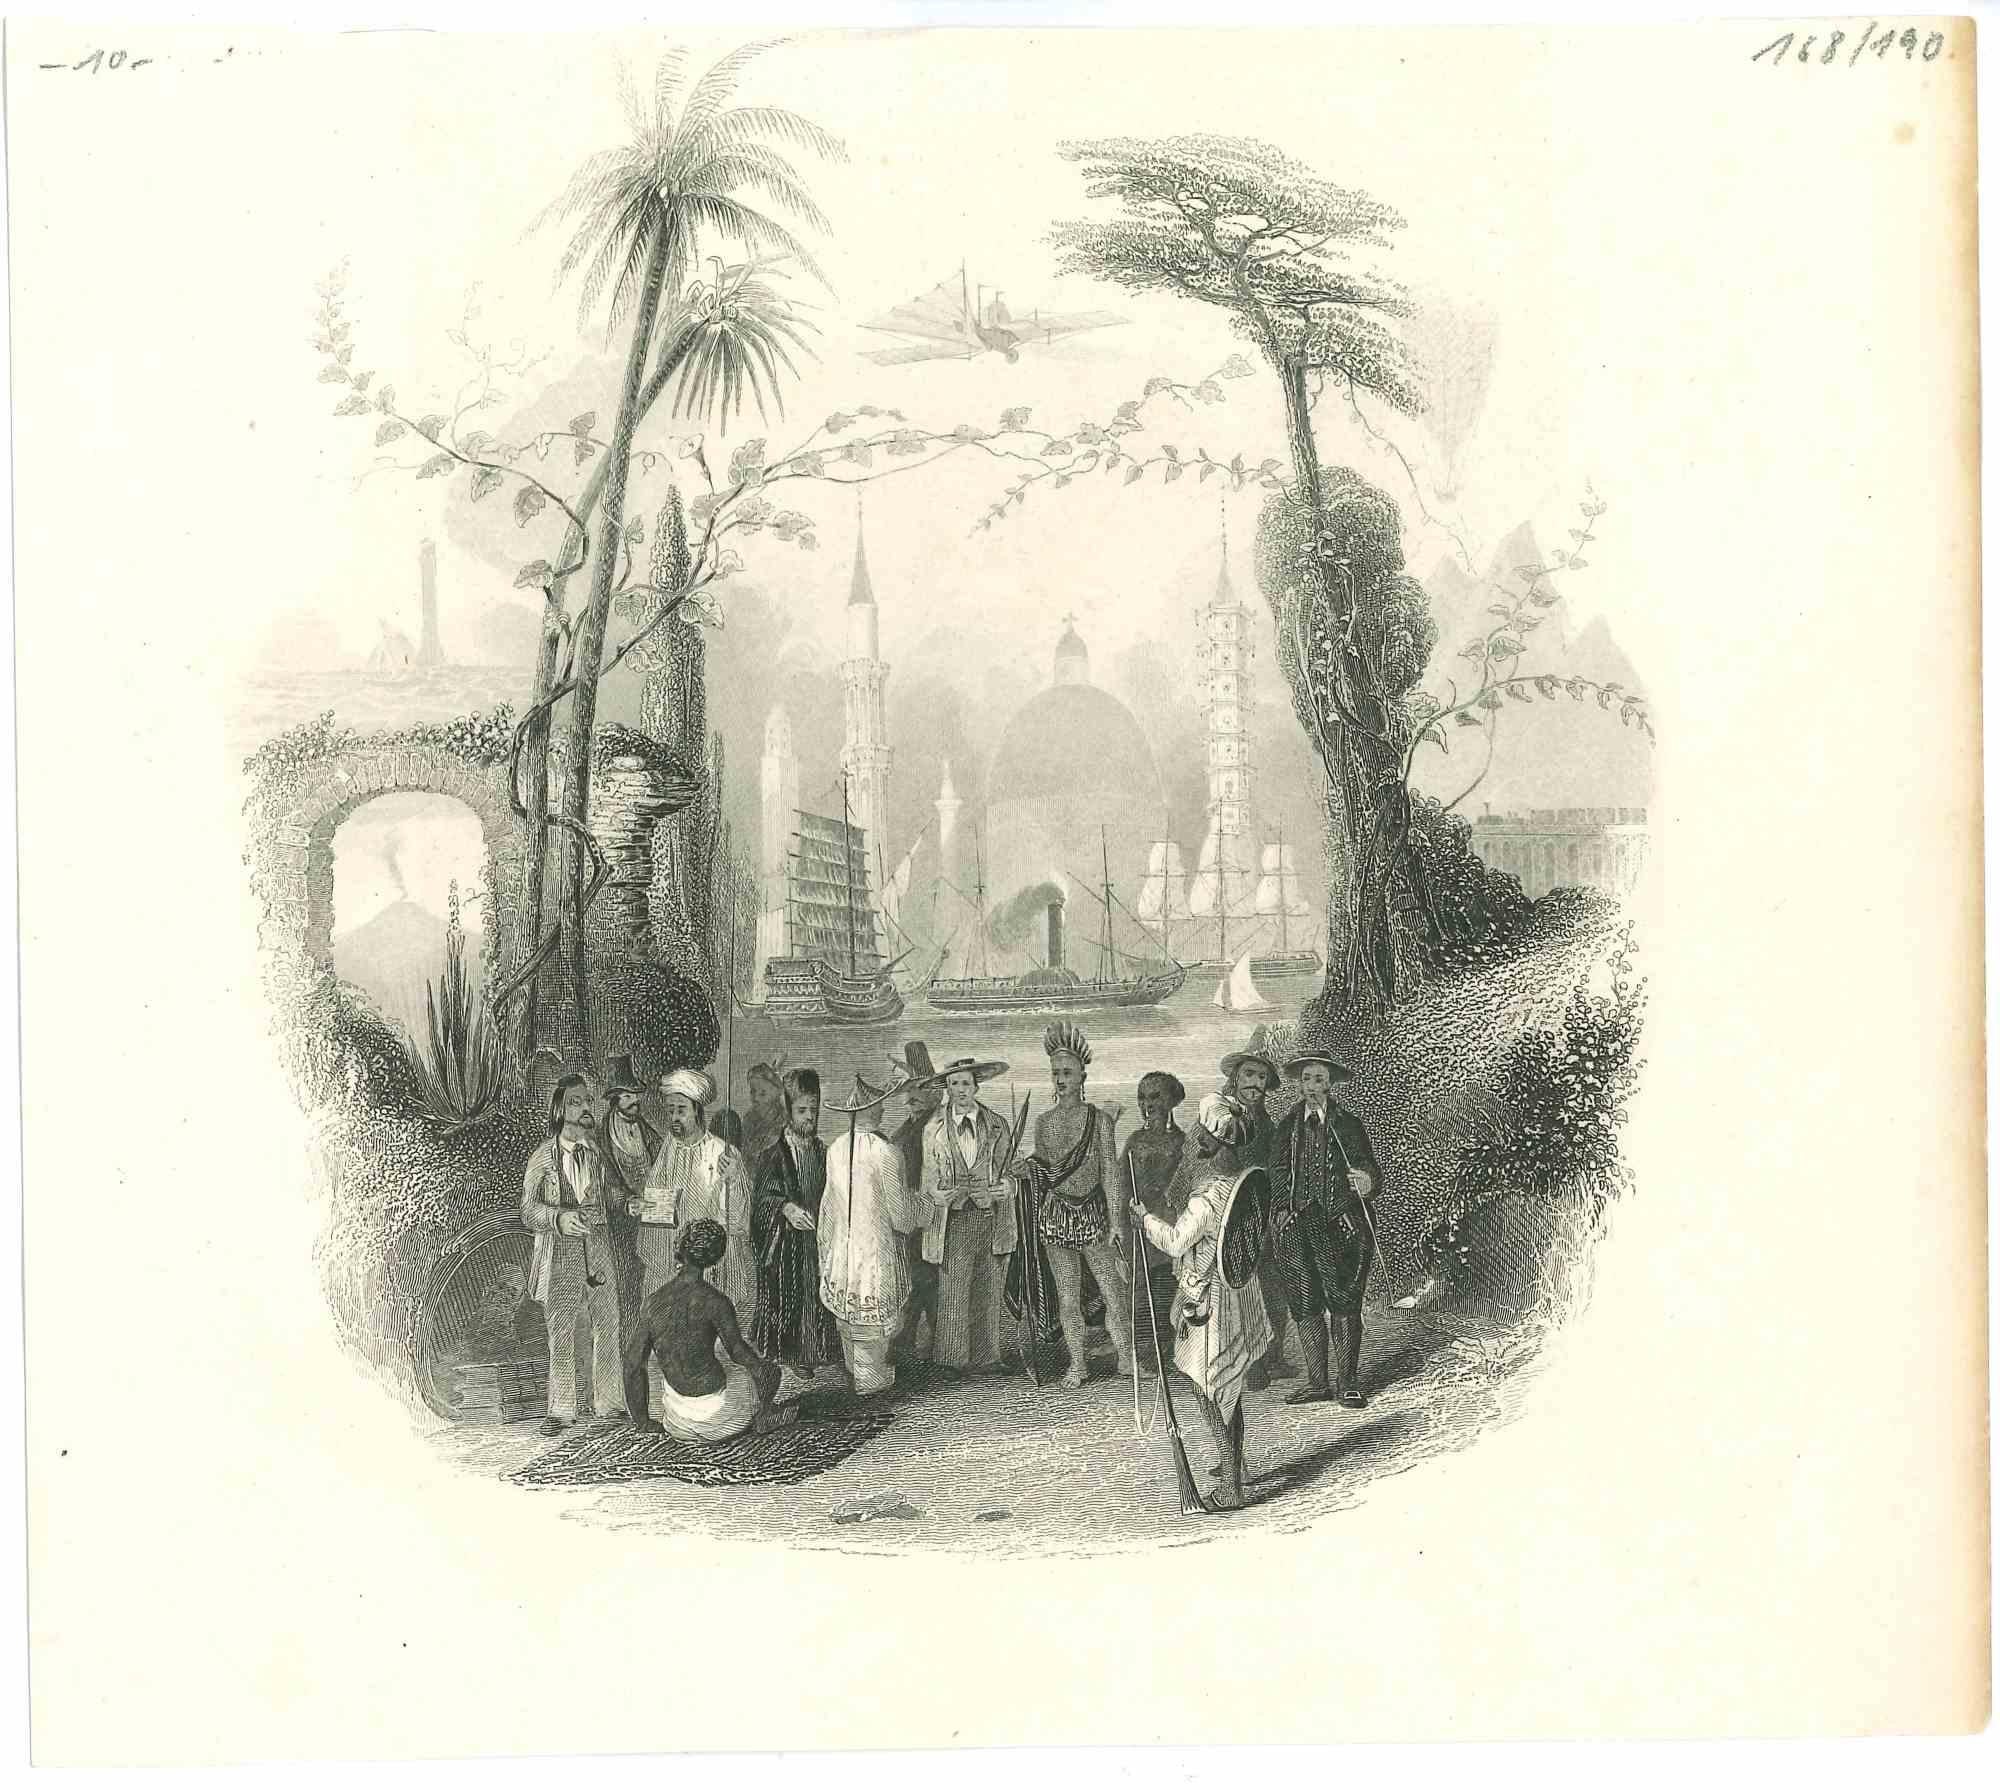 Unknown Landscape Print - Exotic Scene - Original Lithograph - 1850s